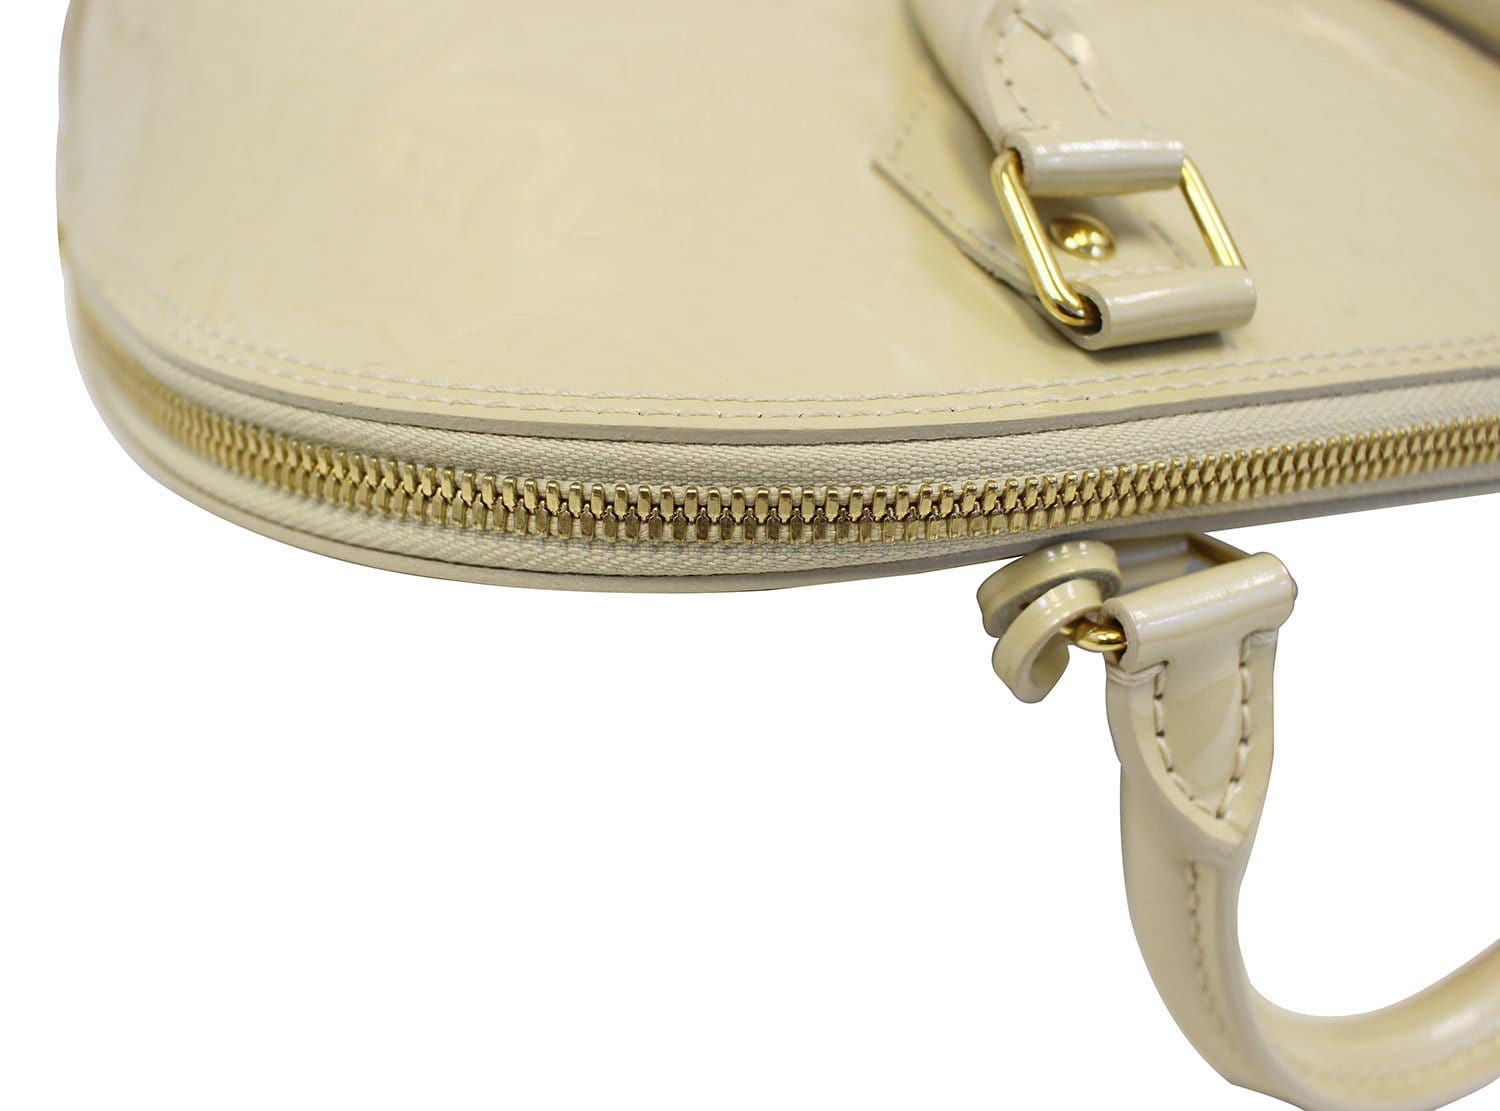 Louis Vuitton Alma Handbag 383488